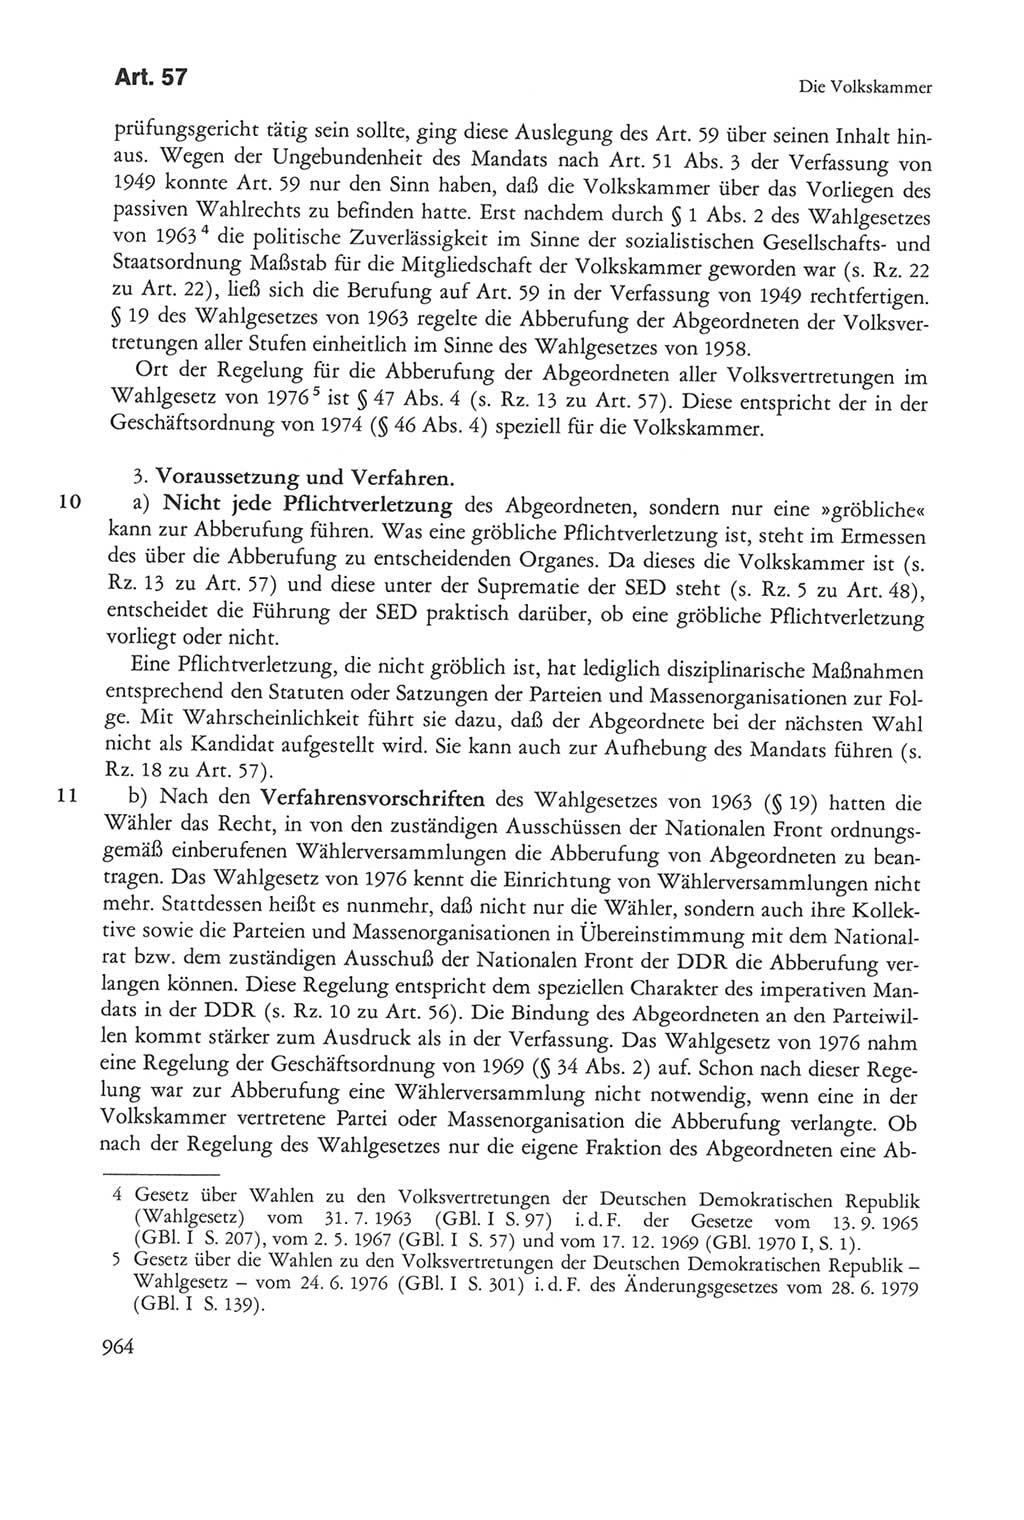 Die sozialistische Verfassung der Deutschen Demokratischen Republik (DDR), Kommentar 1982, Seite 964 (Soz. Verf. DDR Komm. 1982, S. 964)